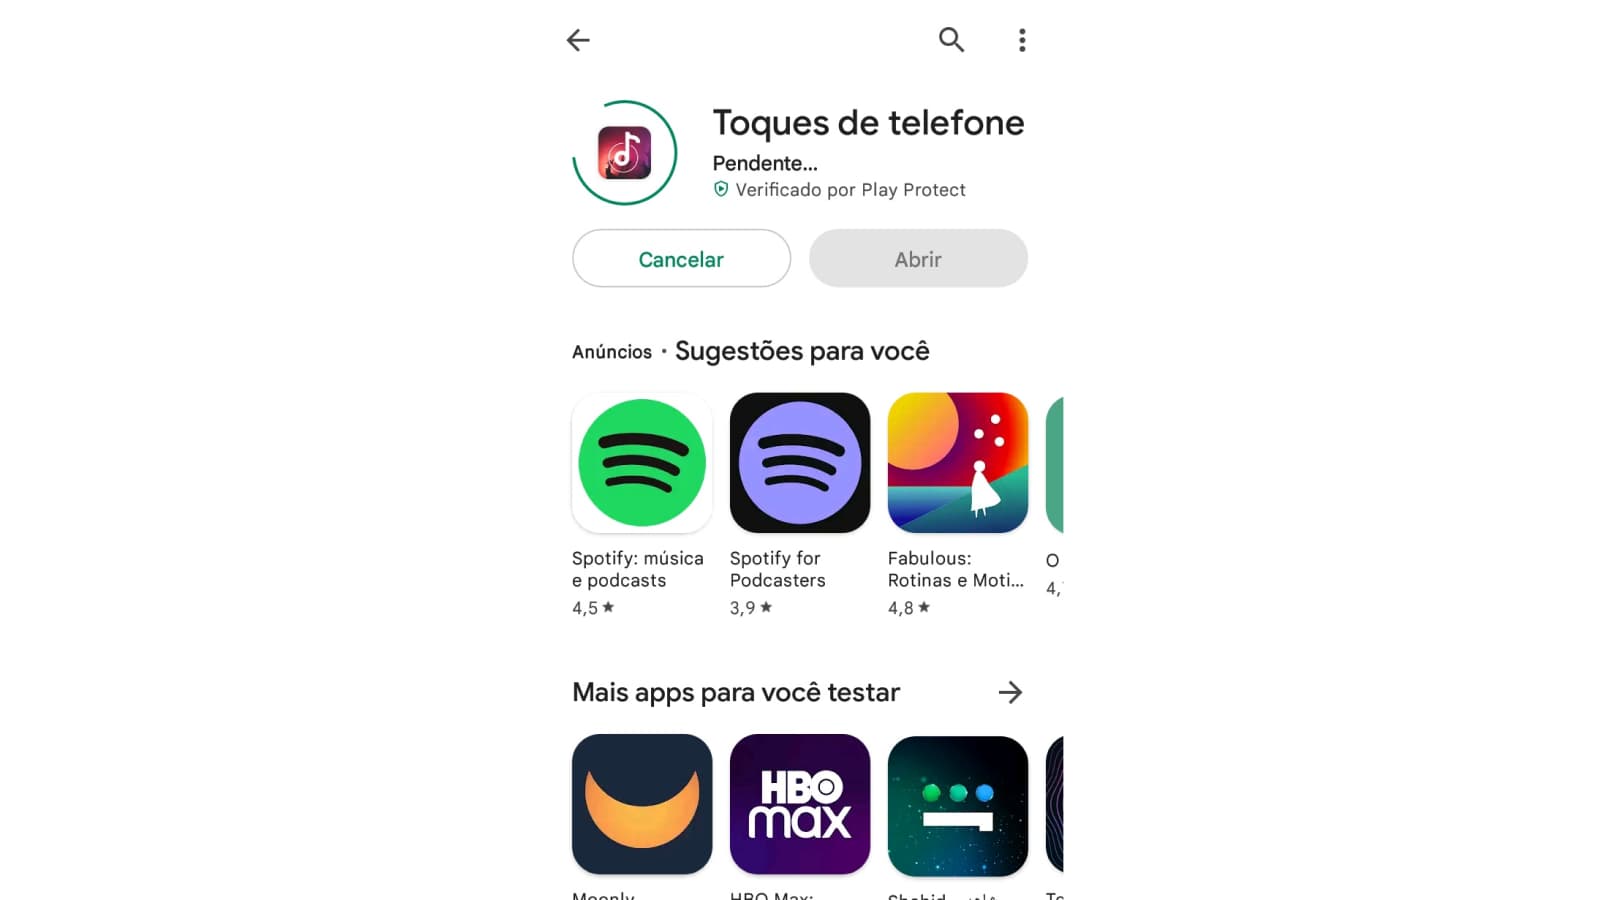 Tela de download de Toques de telefone na Play Store